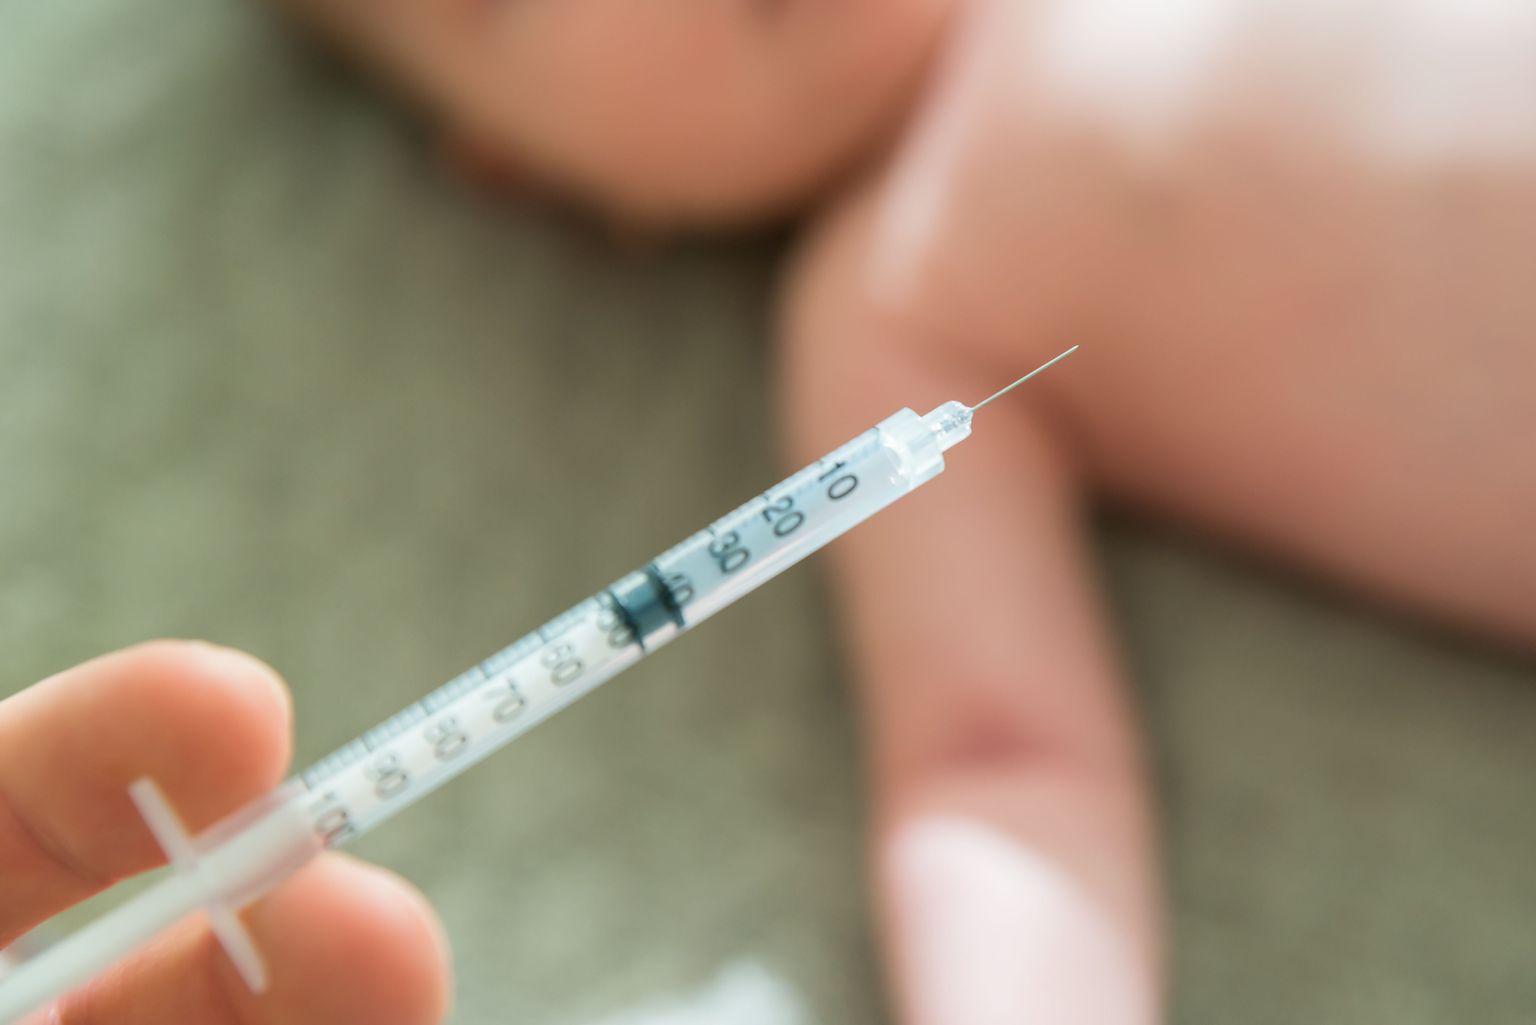 Eestis vaktsineeritakse lapsi leetrite, punetiste, mumpsi liitvaktsiiniga ühe aasta ja 13 aasta vanuses.